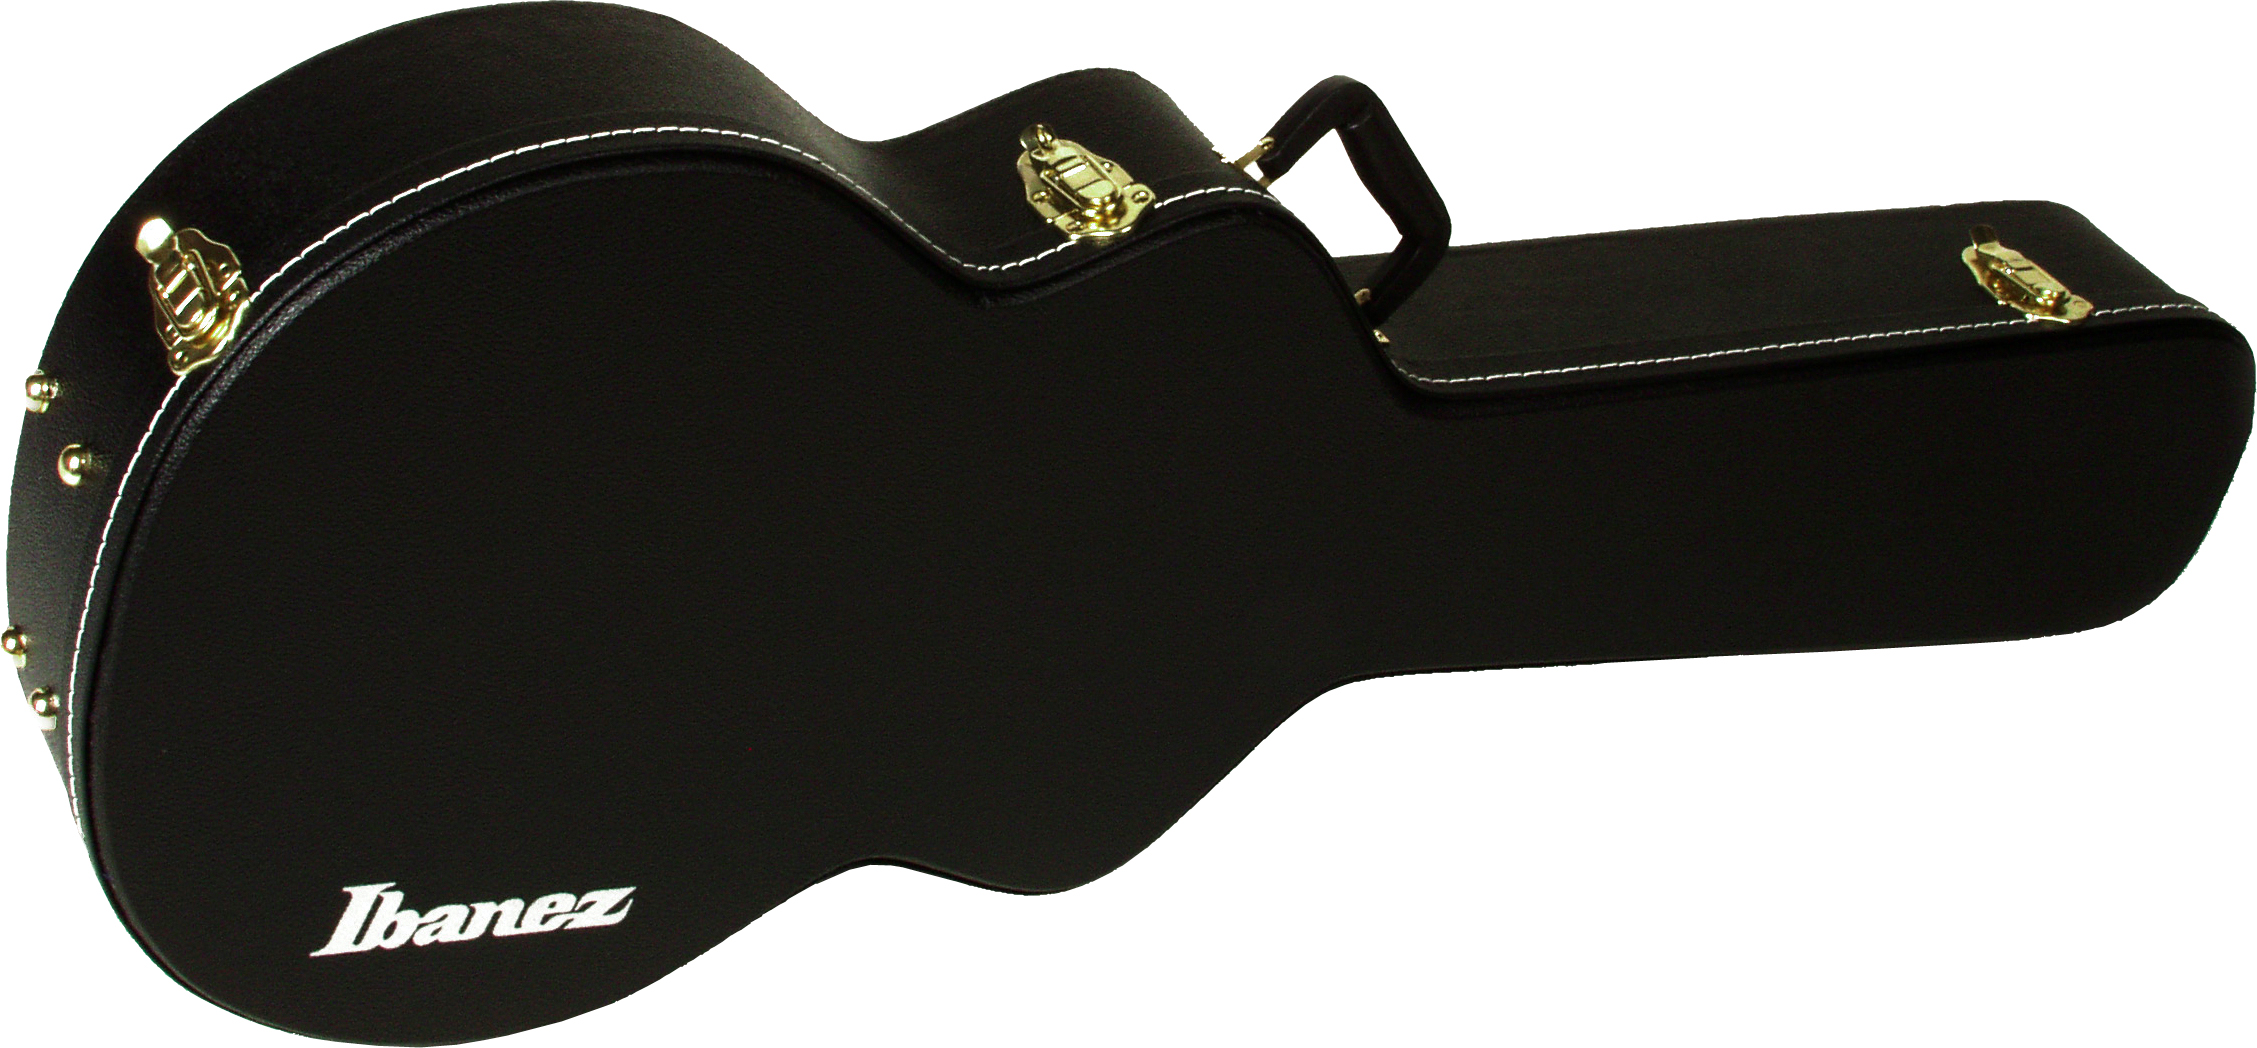 Ibanez Ibanez AS100C Hardshell Case for AS73, AF75, and AF75T Guitars